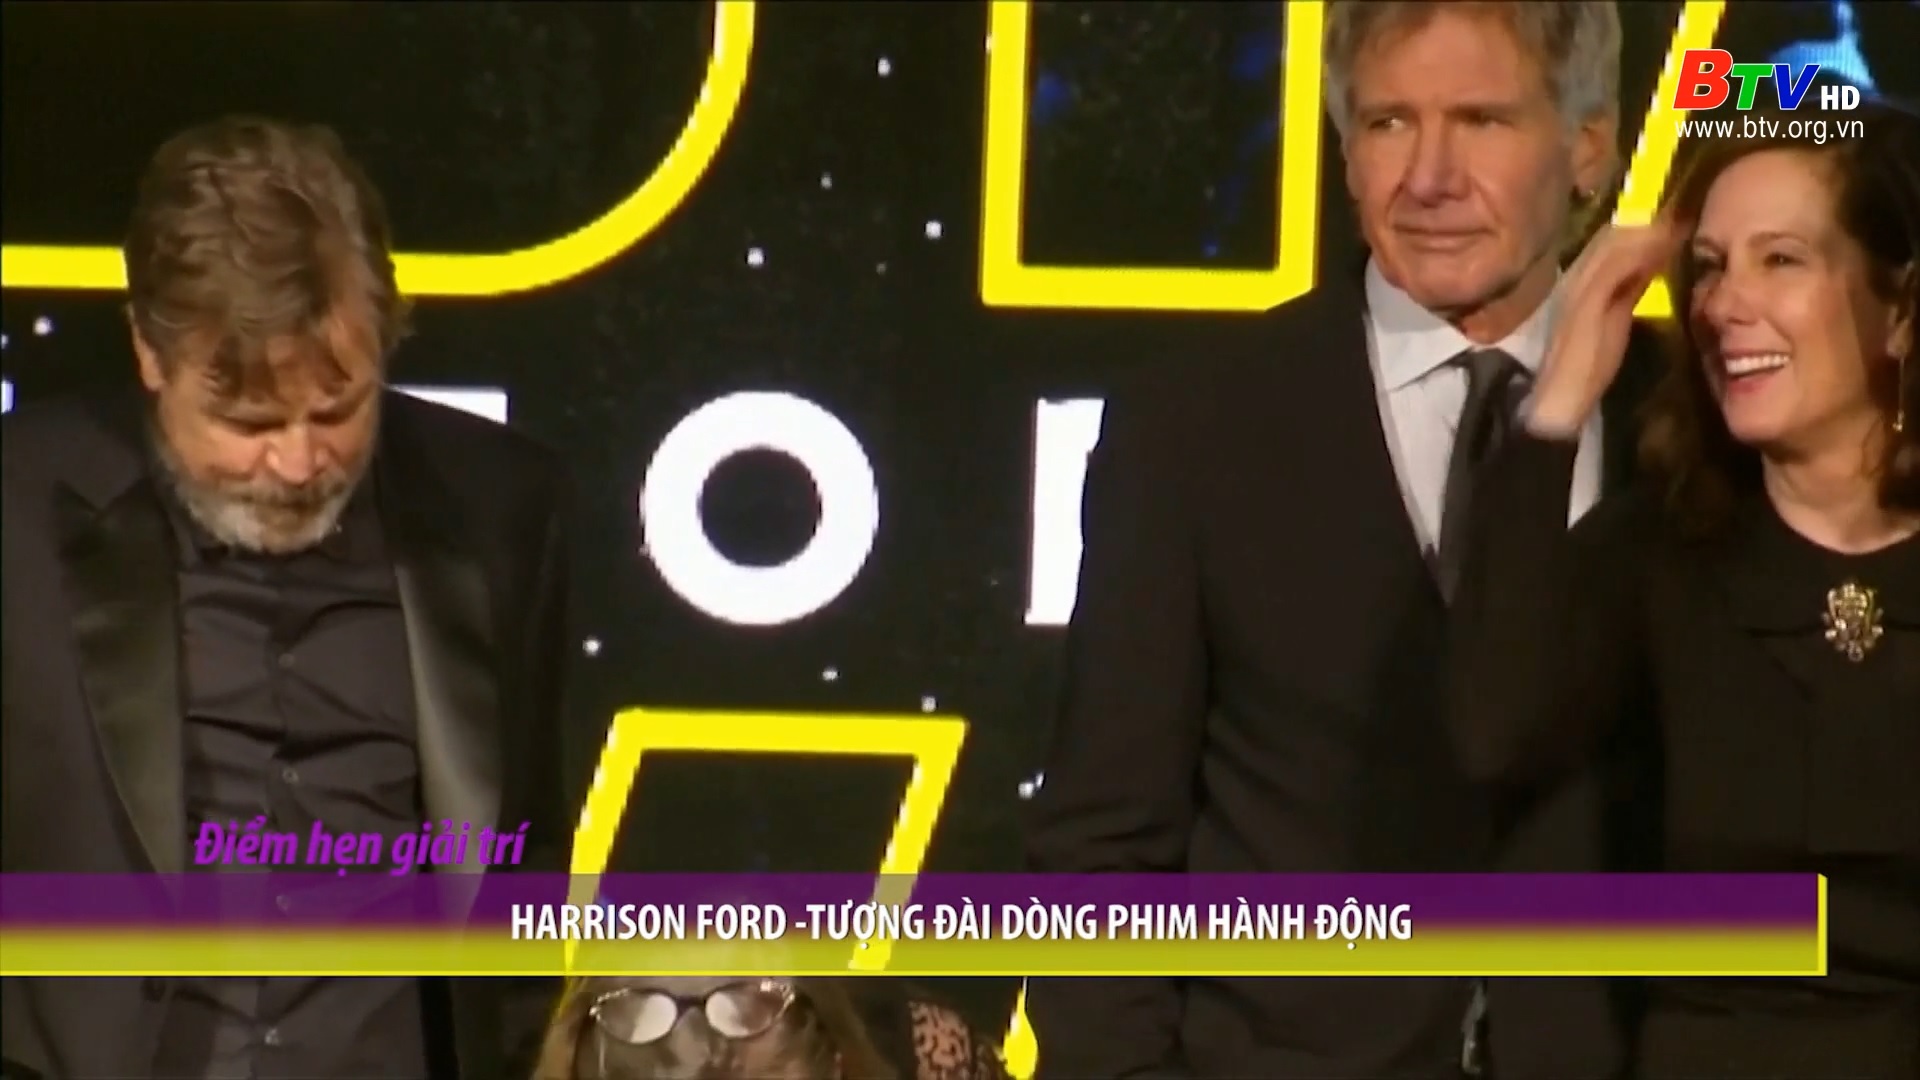 Harrison Ford – Tượng đài dóng phim hành động